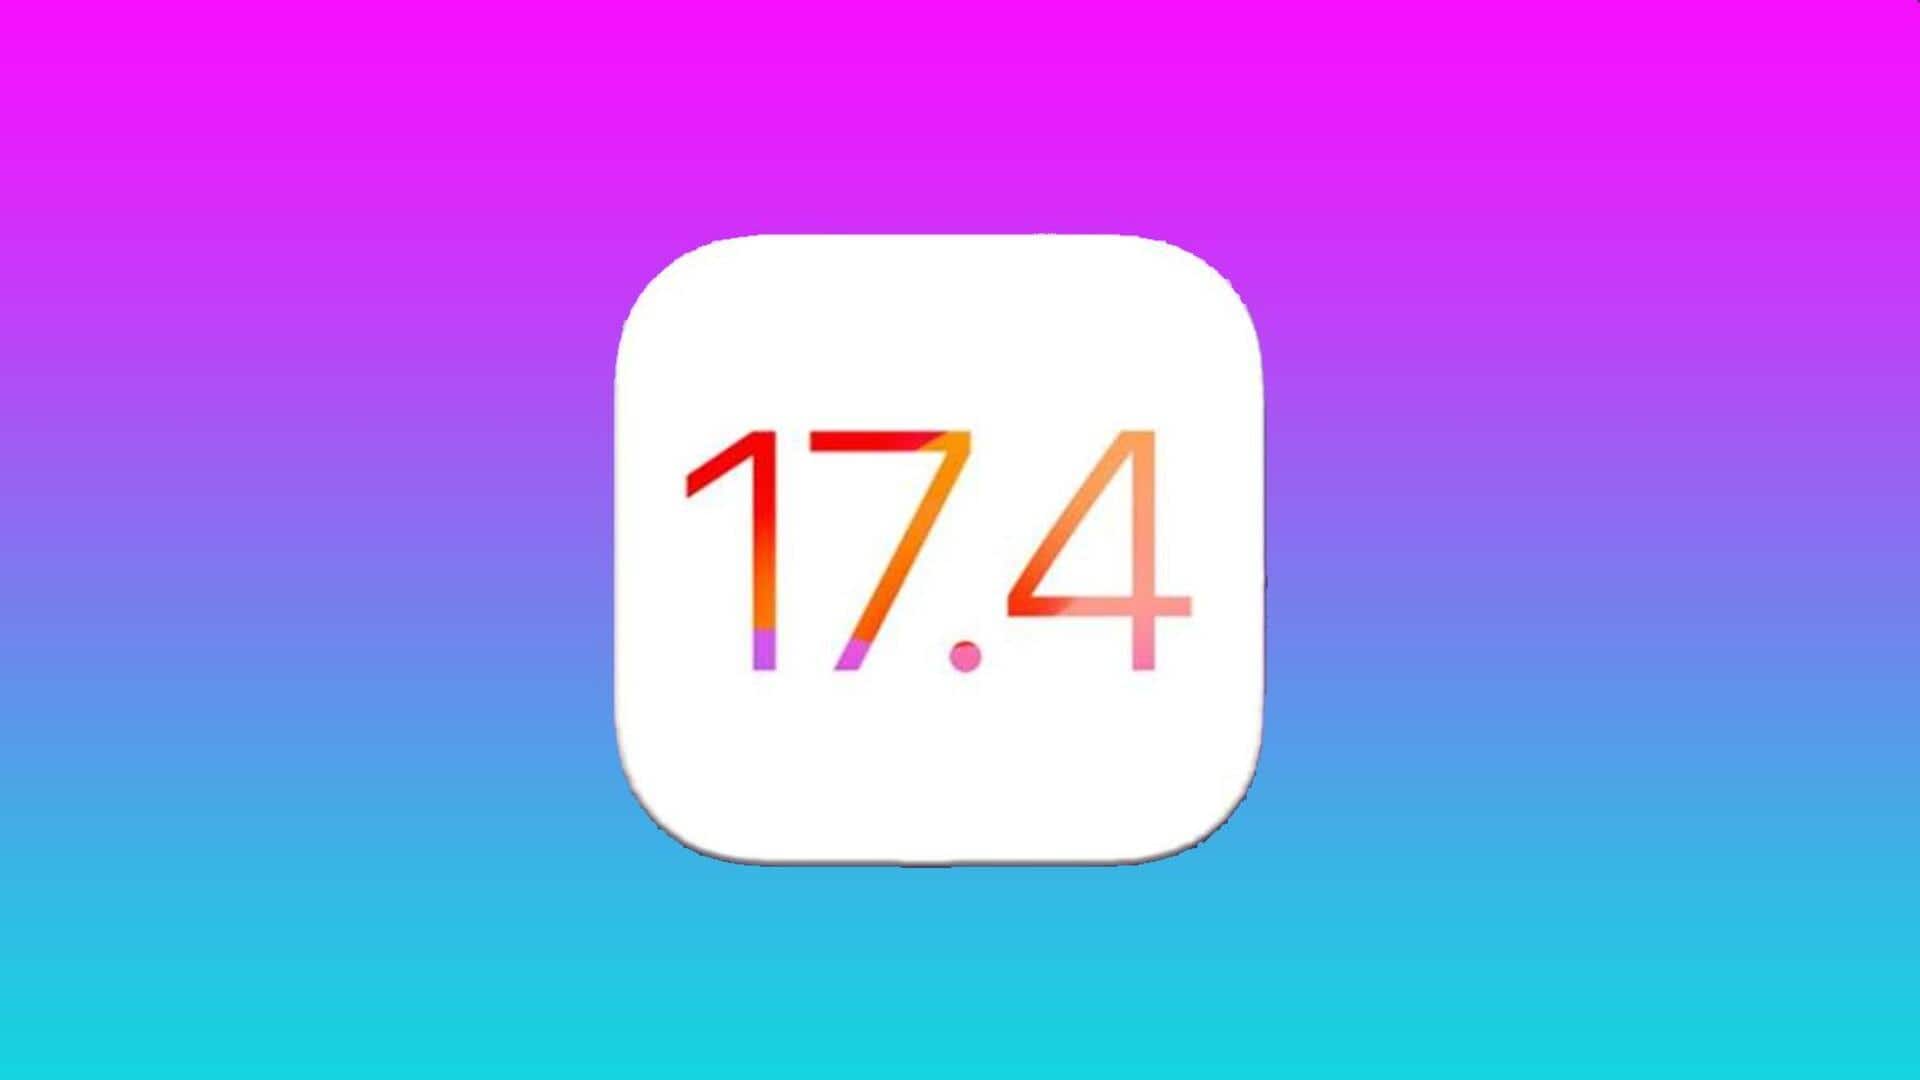 ऐपल ने जारी किया iOS 17.4 बीटा 4 अपडेट, यहां जानें फीचर्स 